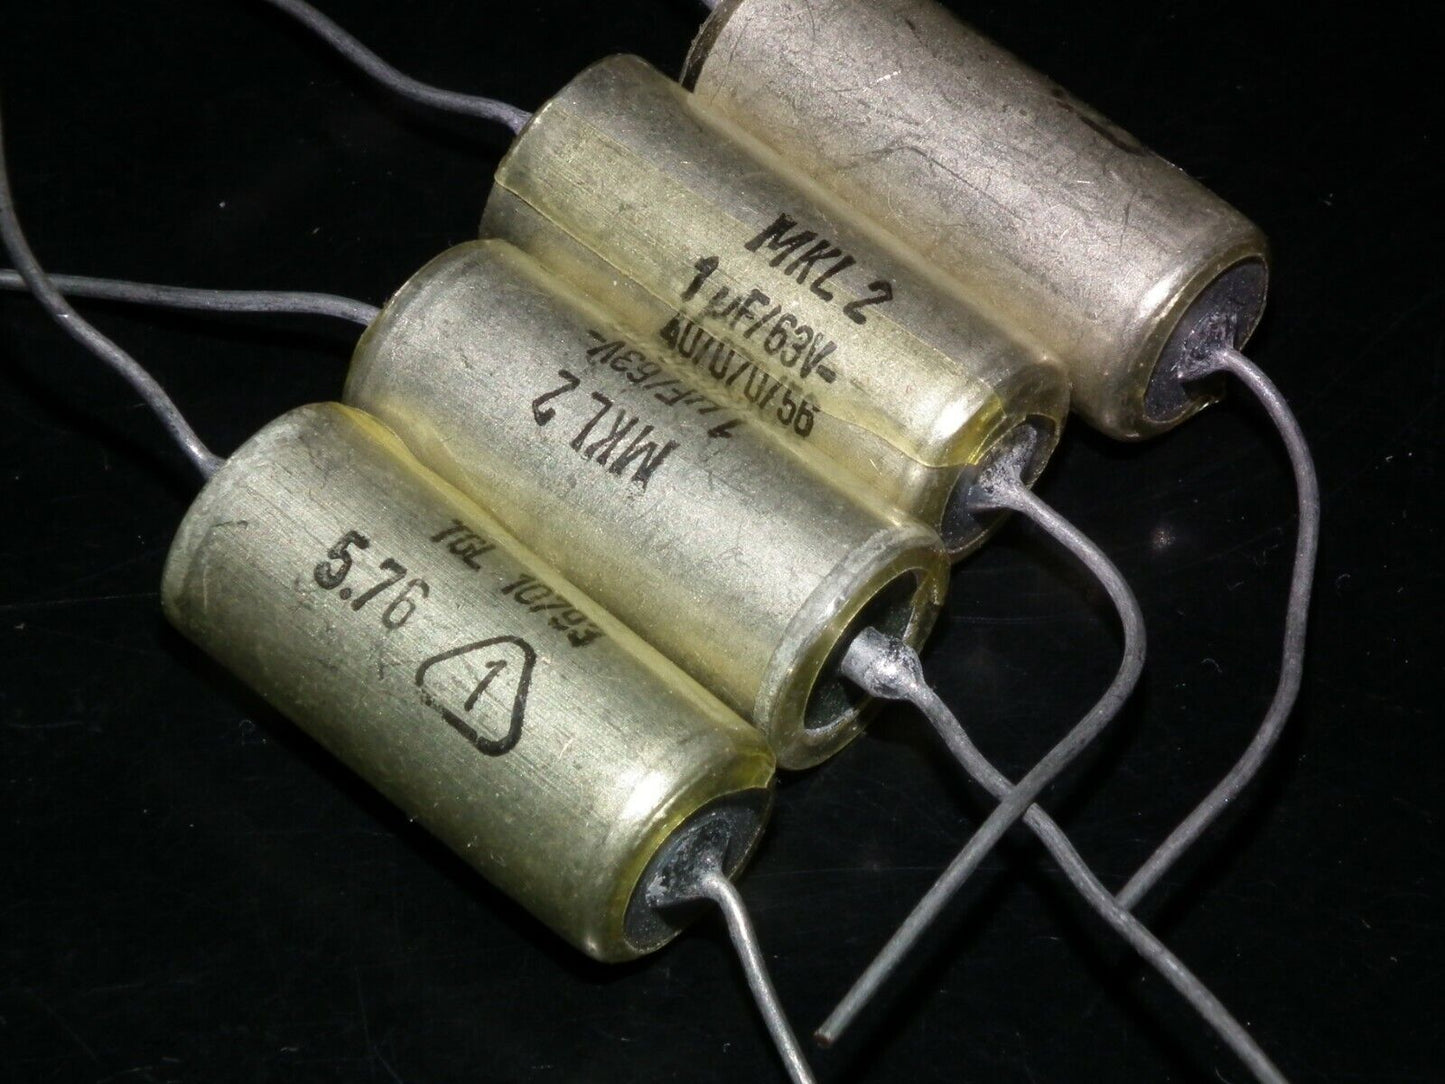 Four vintage NOS capacitors 1uF 63V MKL2 Made in West Germany in 1976 1mfd 63V